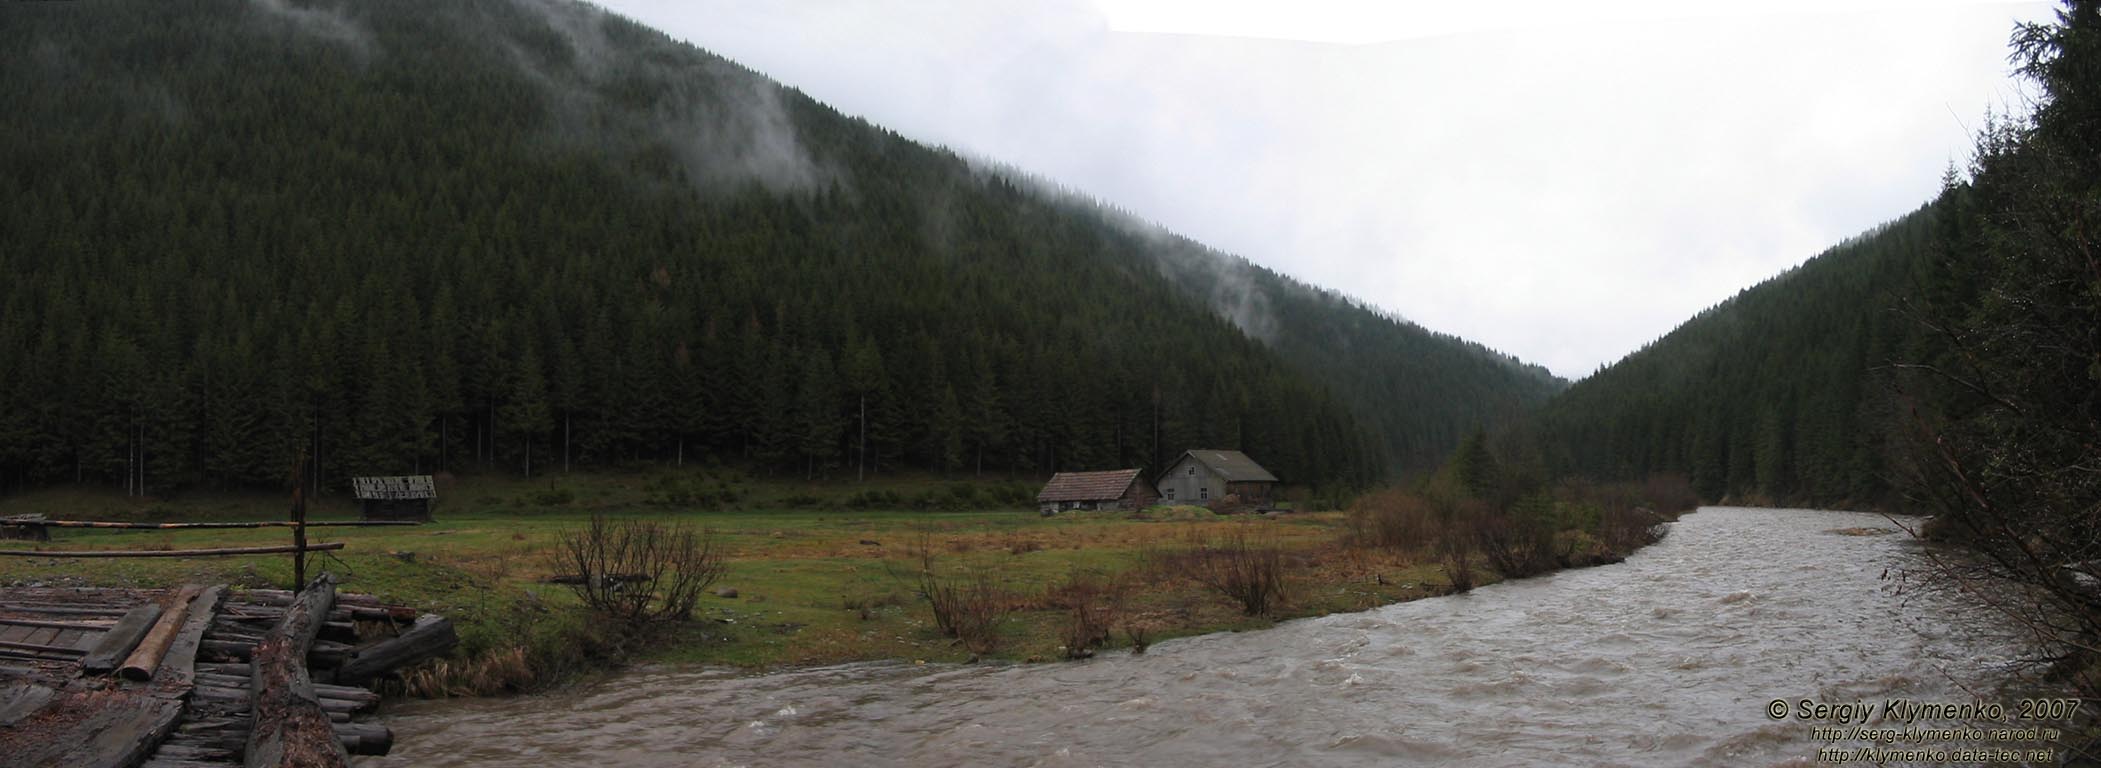 Фото Карпат. Покинутая усадьба в районе впадения в Черный Черемош ручья Альбин (47°54'01